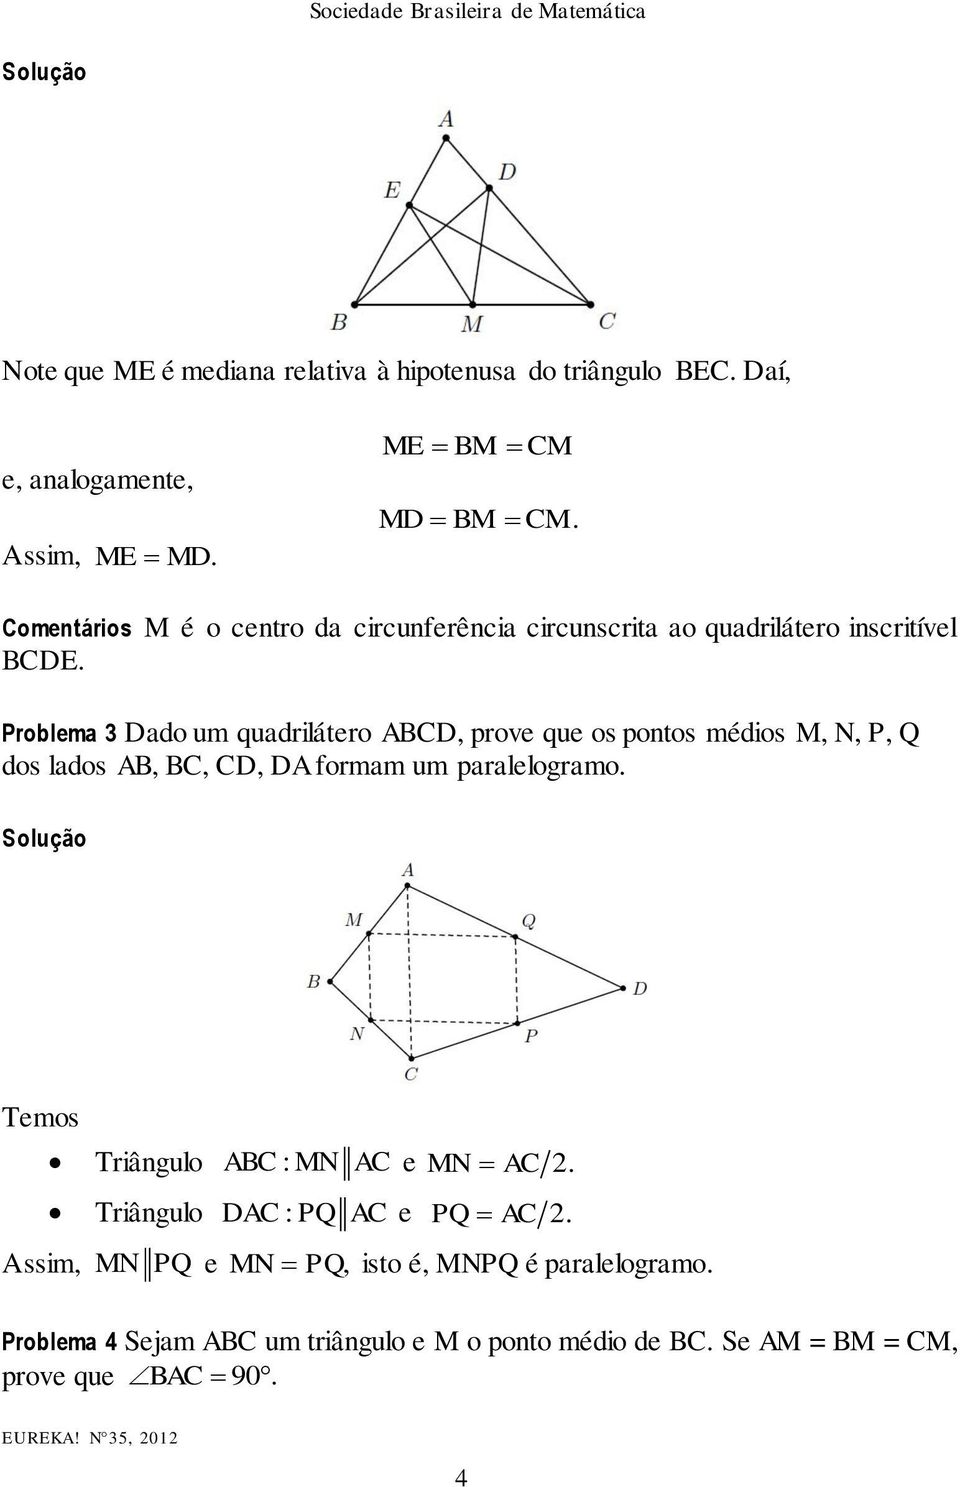 Problema 3 Dado um quadrilátero ABCD, prove que os pontos médios M, N, P, Q dos lados AB, BC, CD, DA formam um paralelogramo.